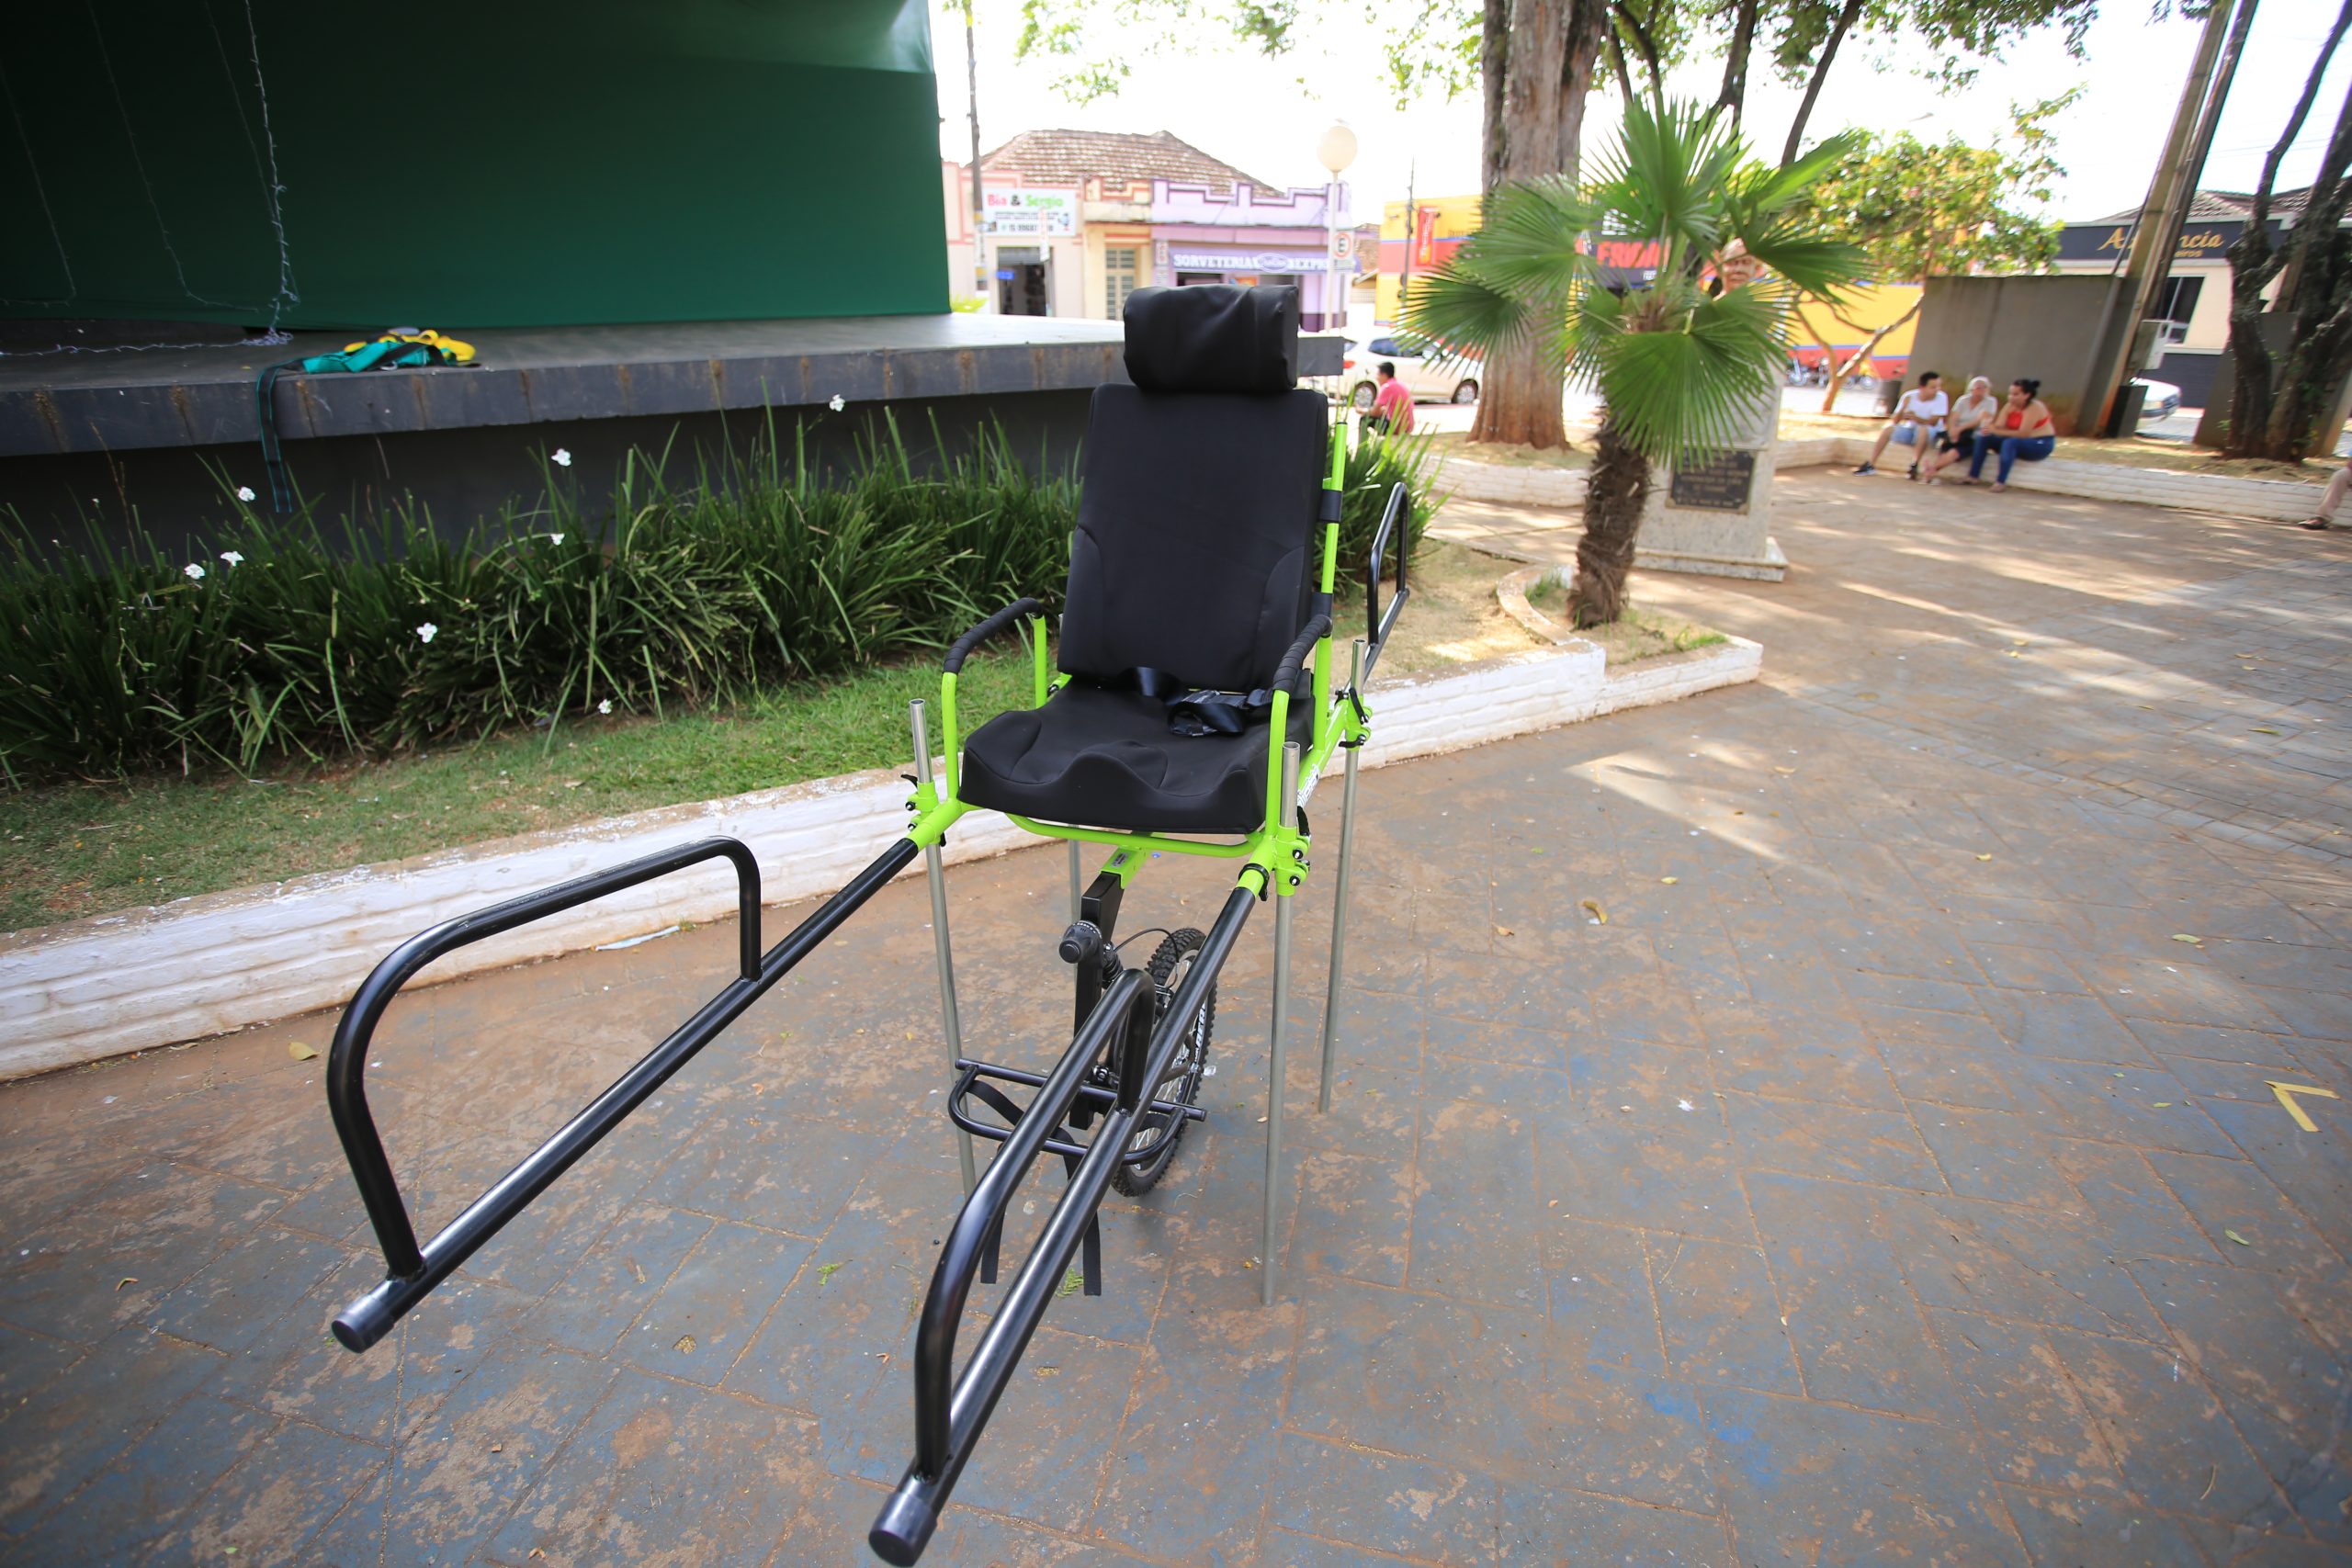 Turismo para todos: Em iniciativa inédita, Prefeitura de Itararé (SP) disponibiliza cadeiras de trilha adaptadas para pessoas com mobilidade reduzida